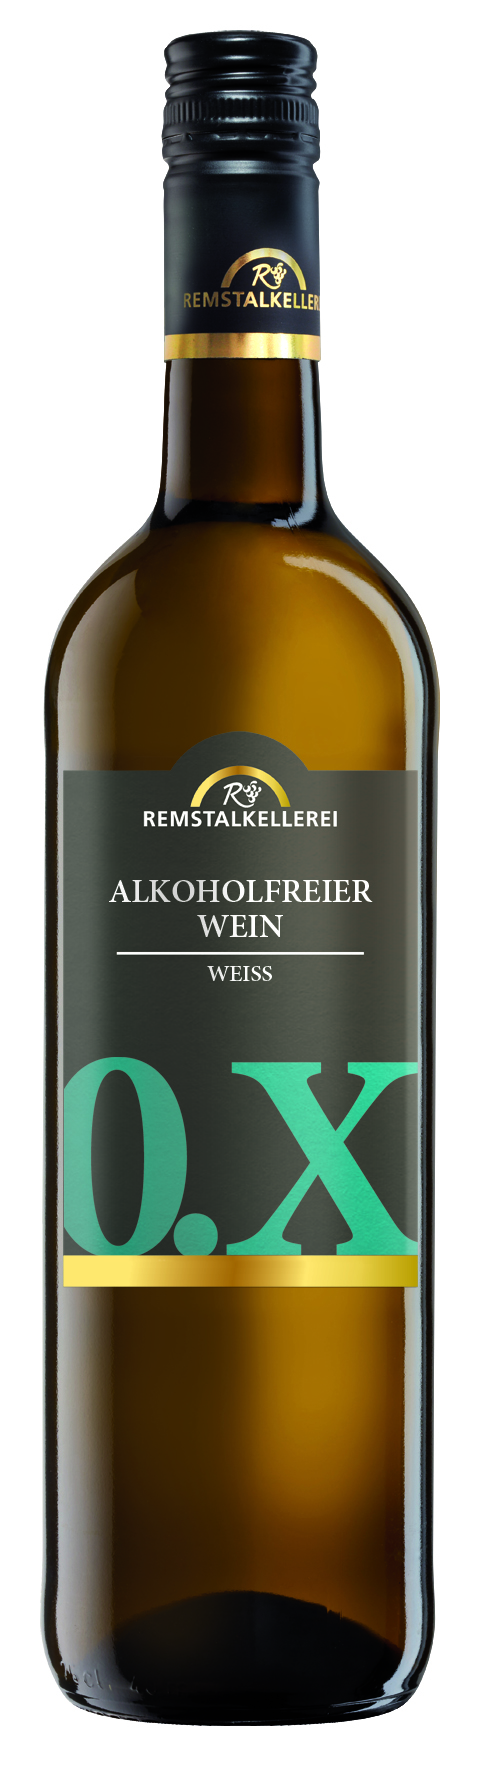 Alkoholfreier Wein: Der alkoholfreie Weißwein 0.X der Remstalkellerei